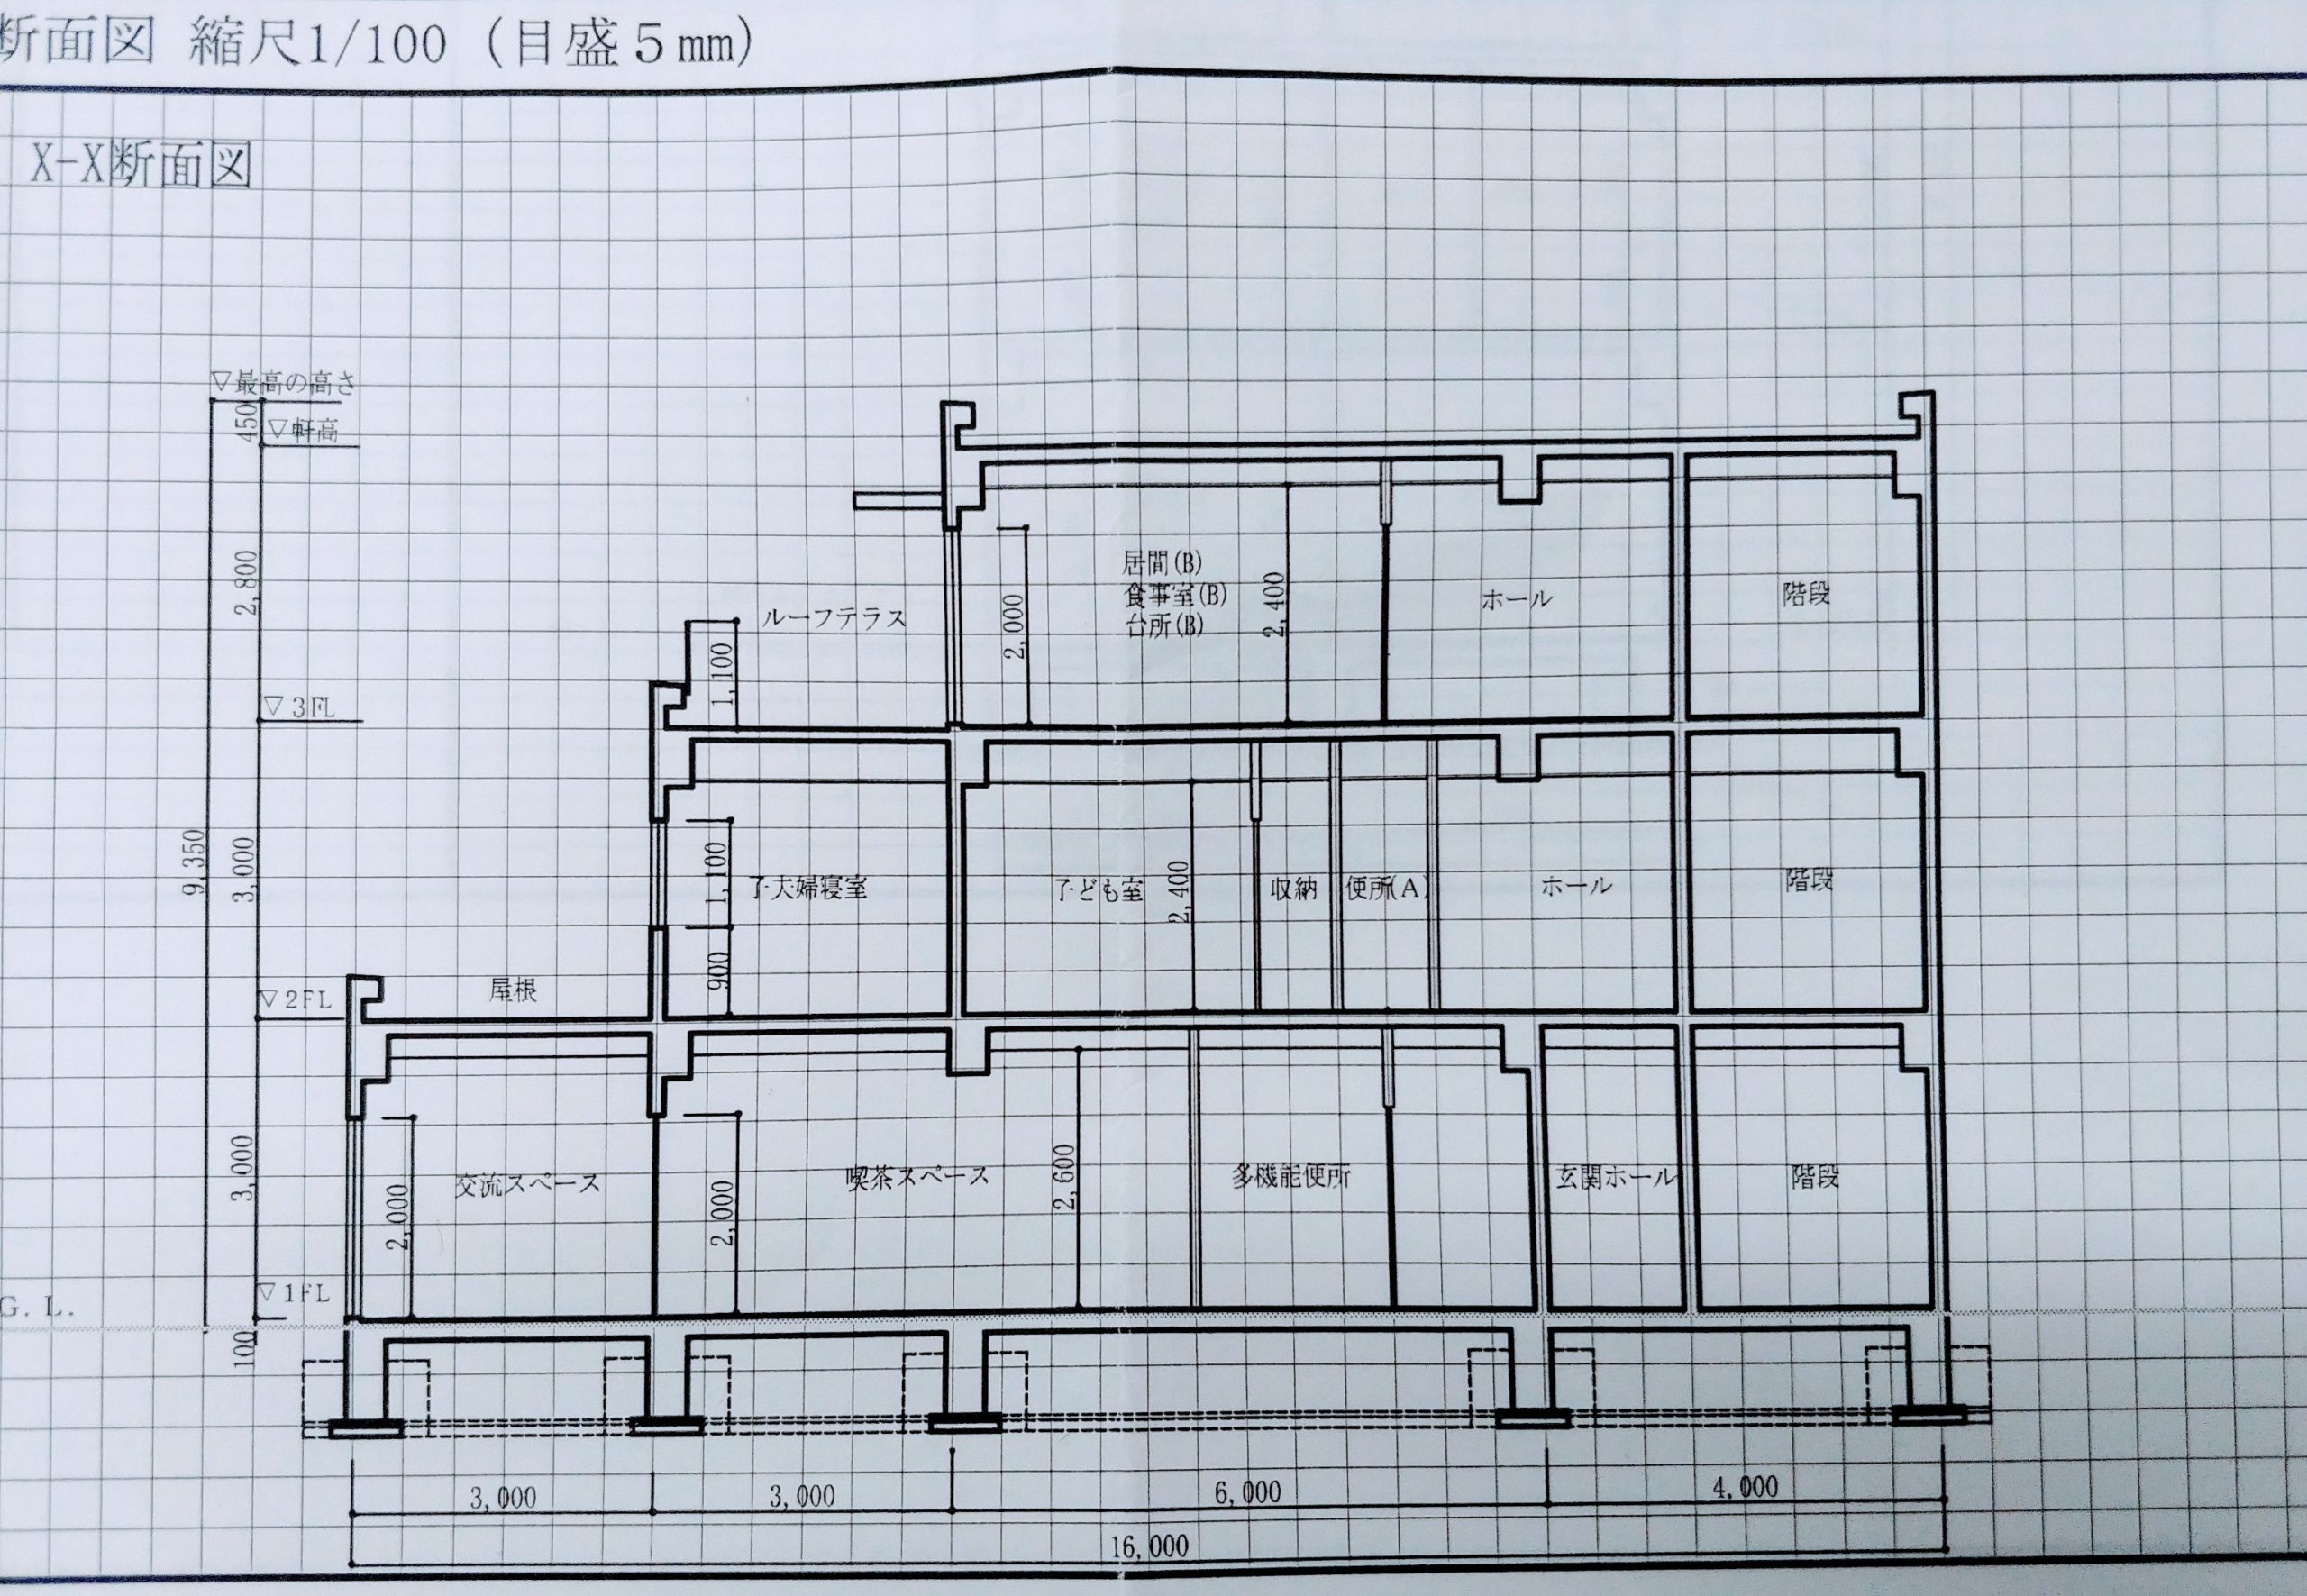 建築の手書き断面パースの書き方 一点透視図法で見せる 一級建築士への道